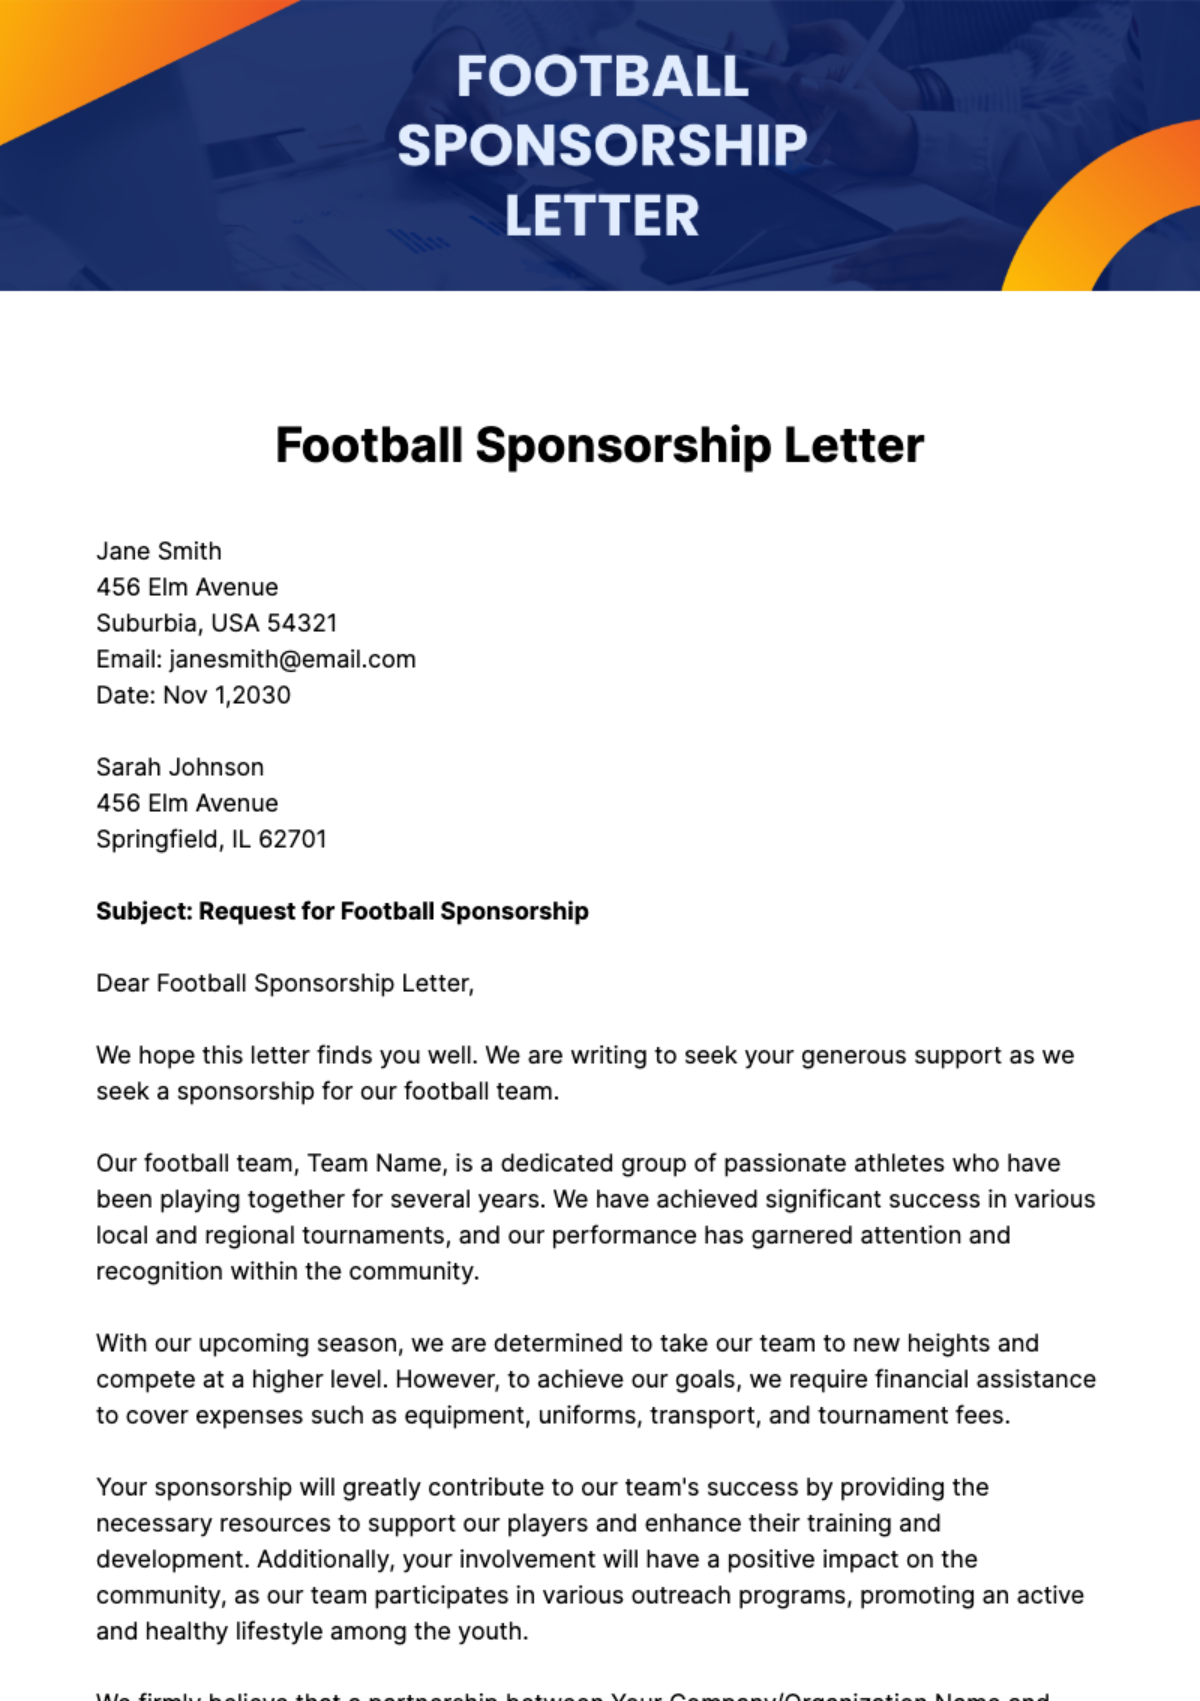 Football Sponsorship Letter Template